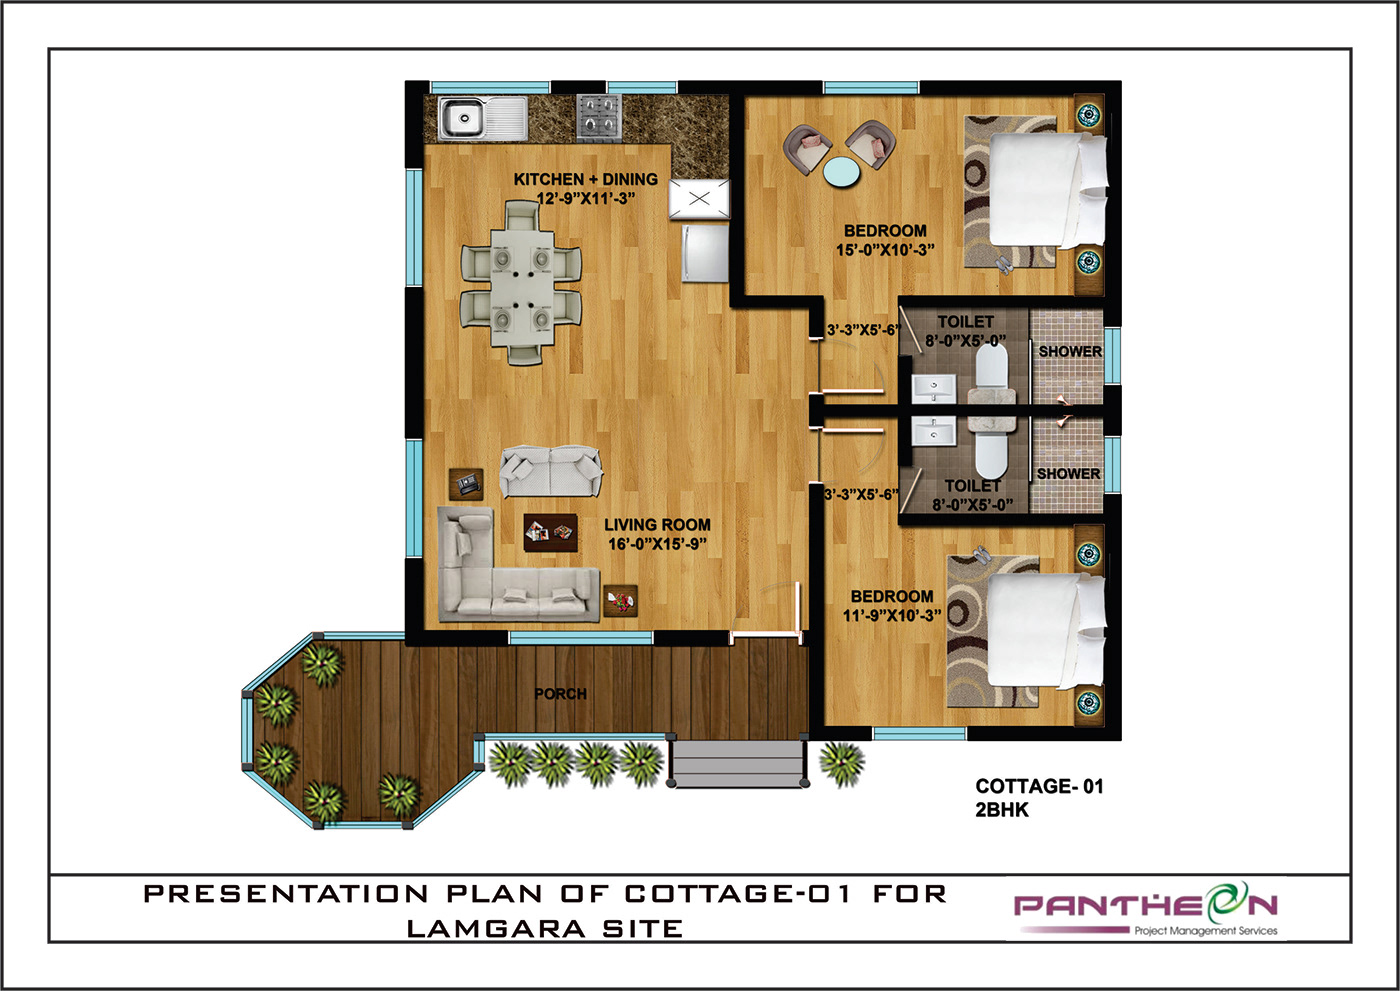 Cottages Digital Art  Drawing  house interior design  plans presentation Render residential Villas